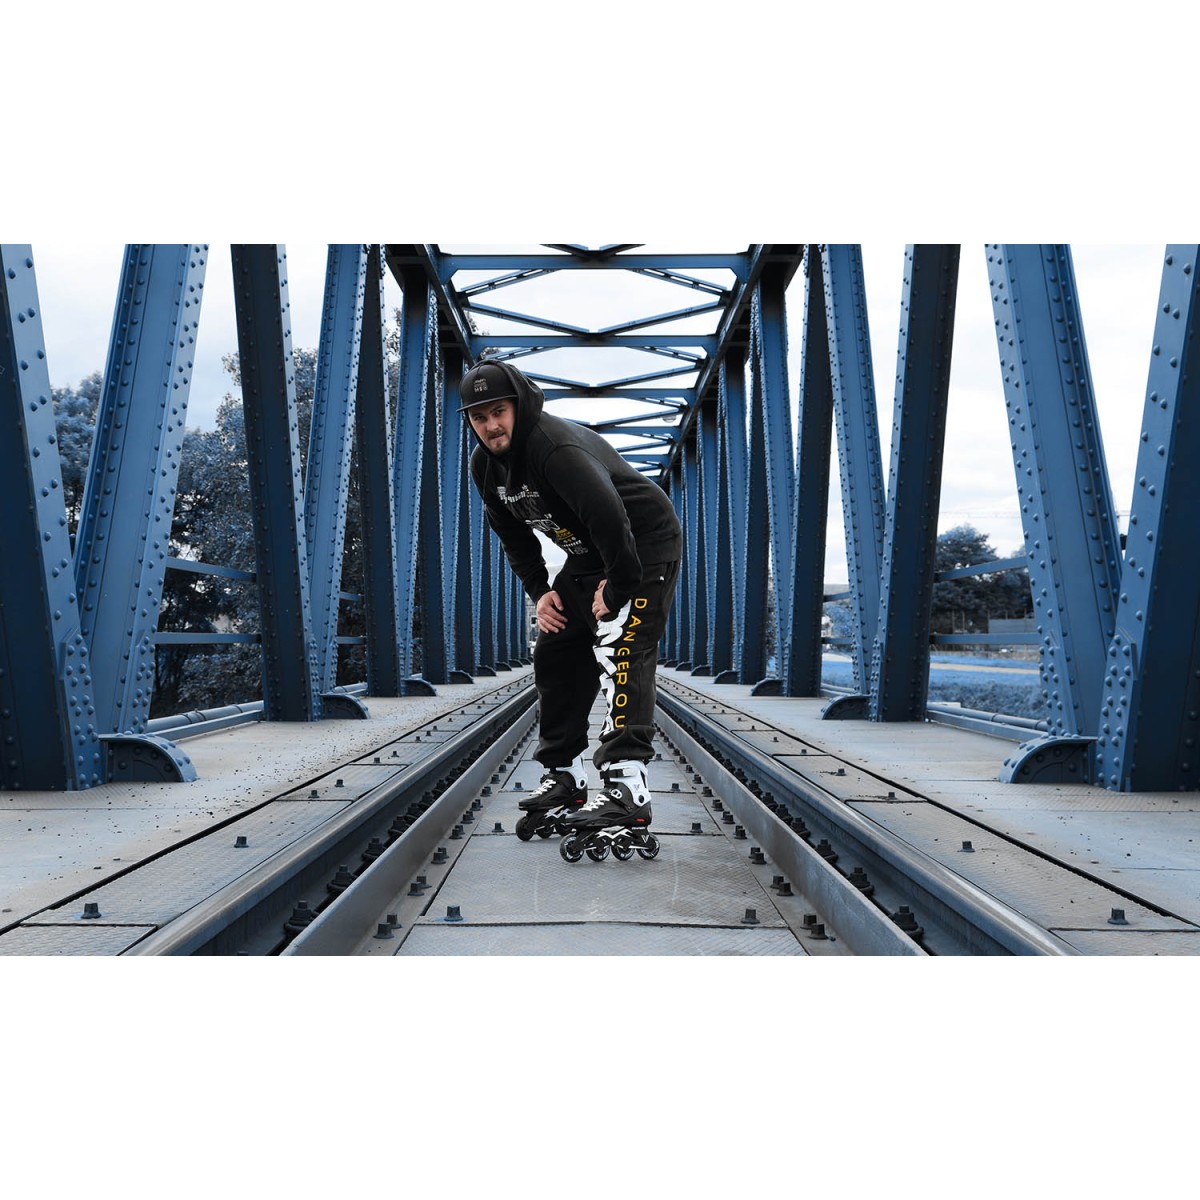 Freestyle/Freeride inline skates VIBER 80 TEMPISH - view 23